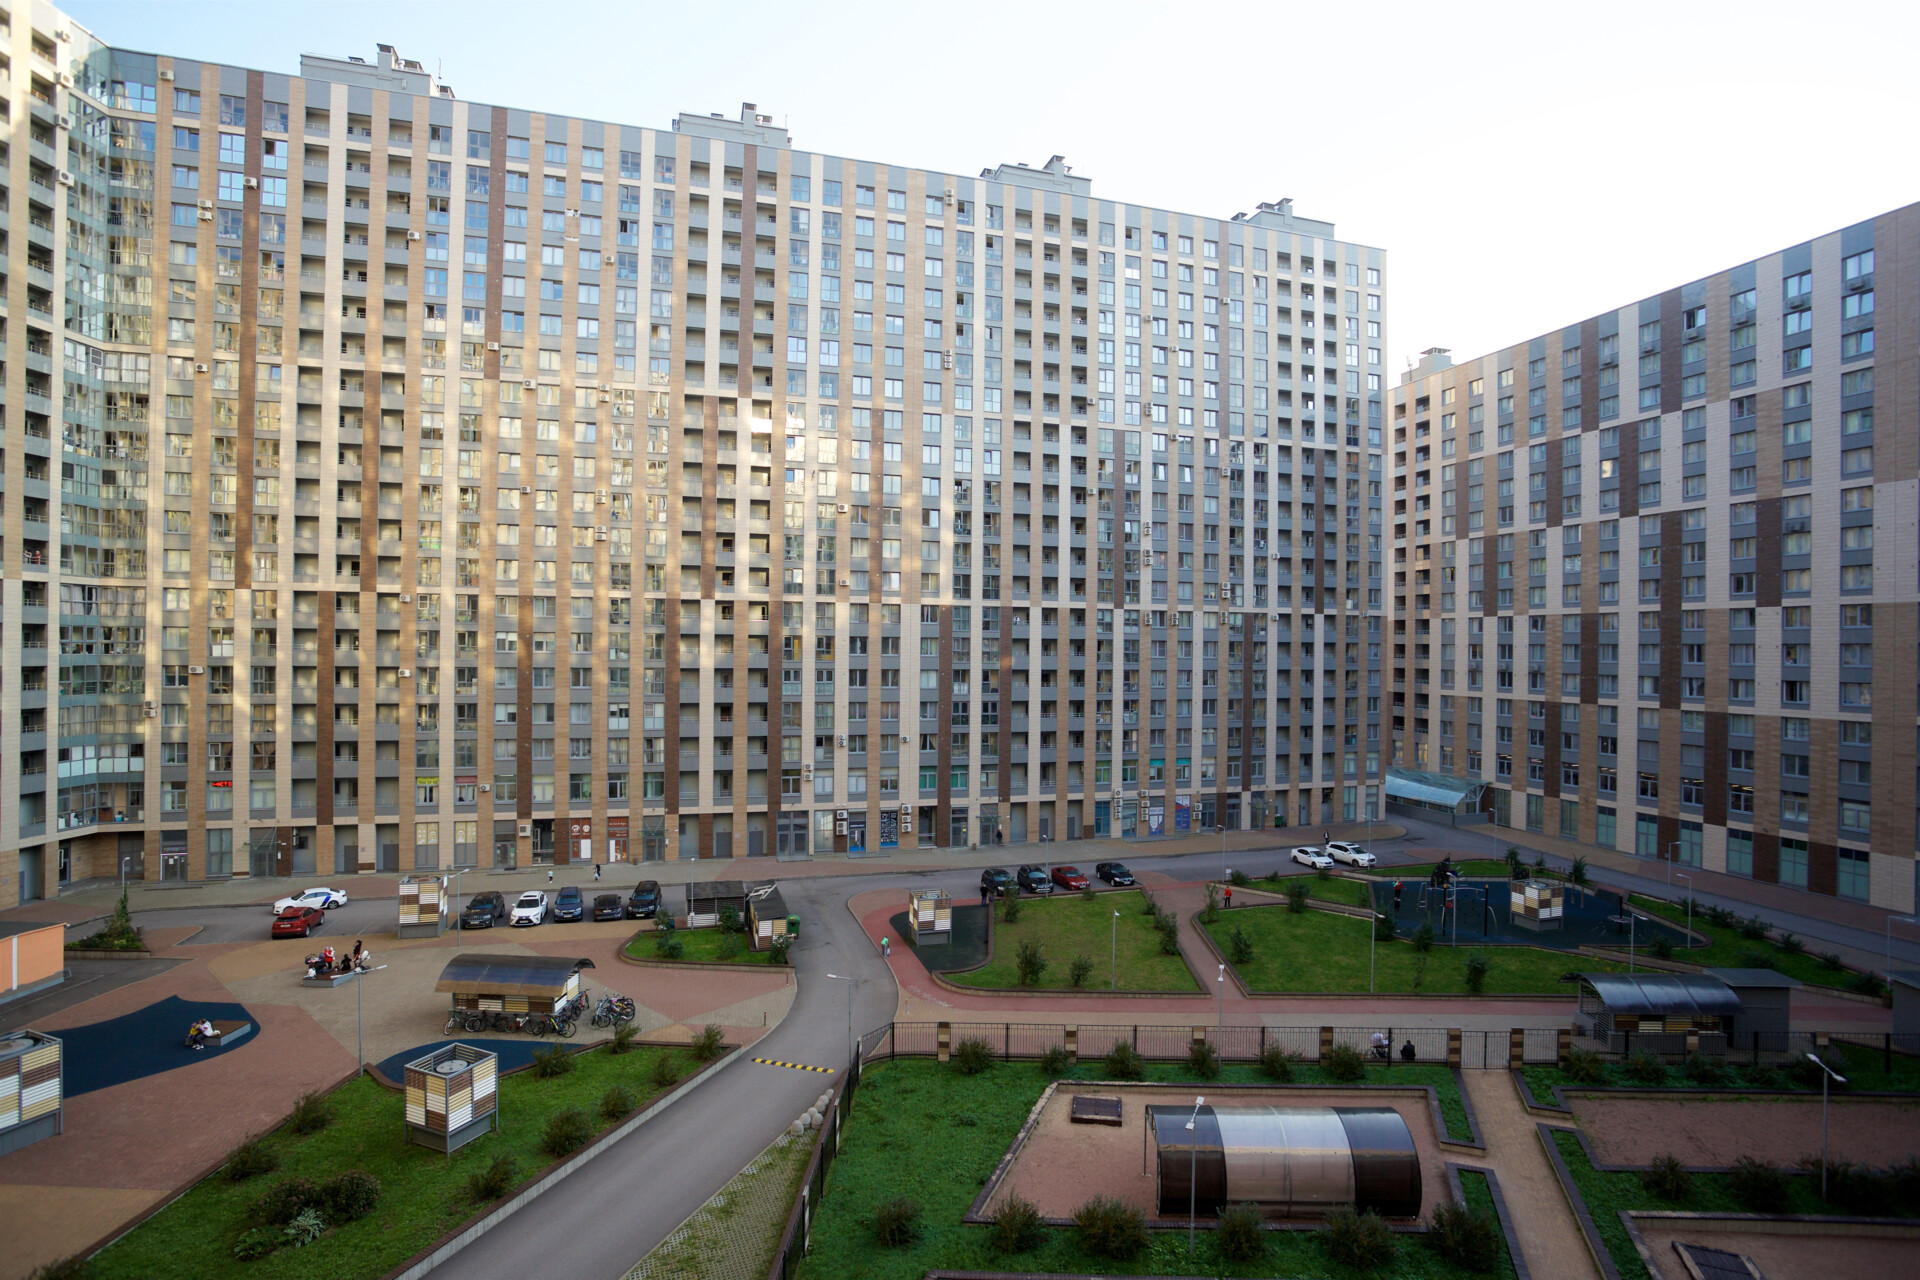 Полезные советы для желающих выгодно арендовать квартиру в Москве